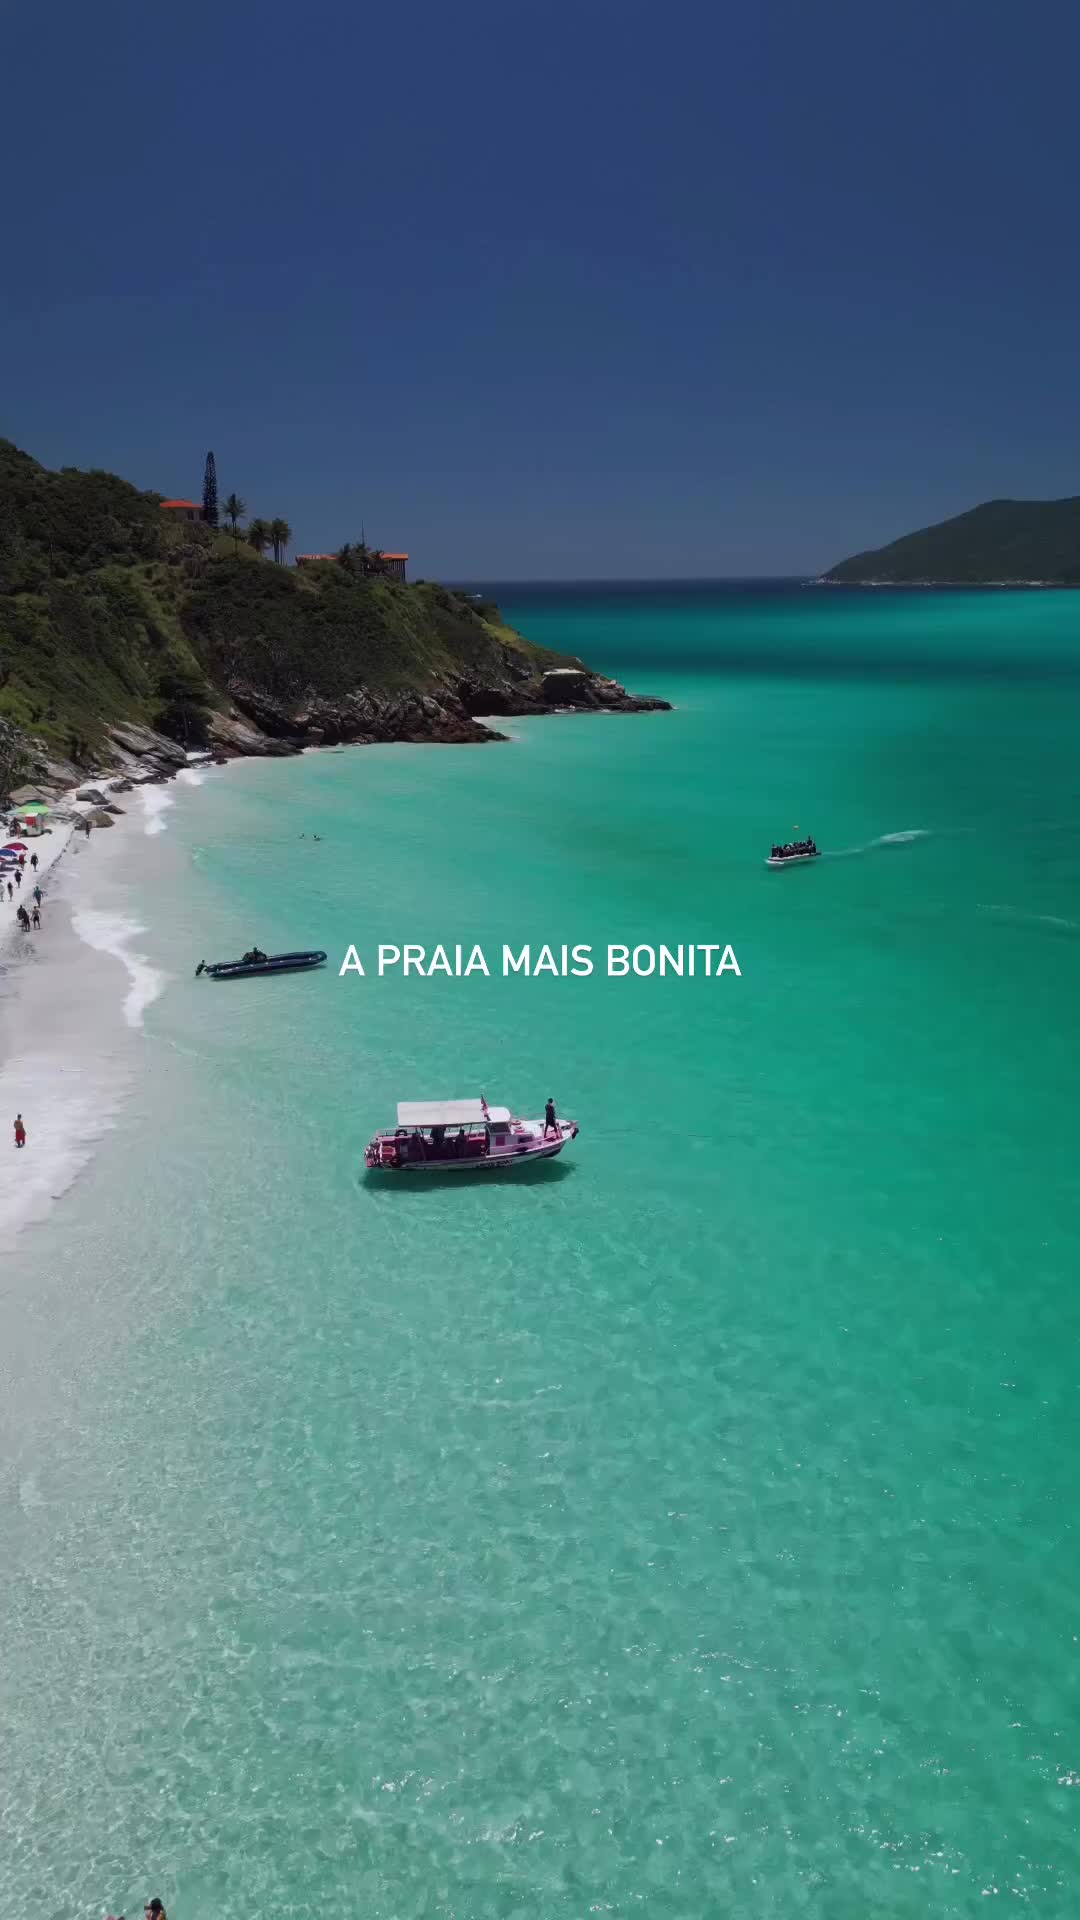 Prainhas do Pontal do Atalaia: Brazil's Caribbean Gem